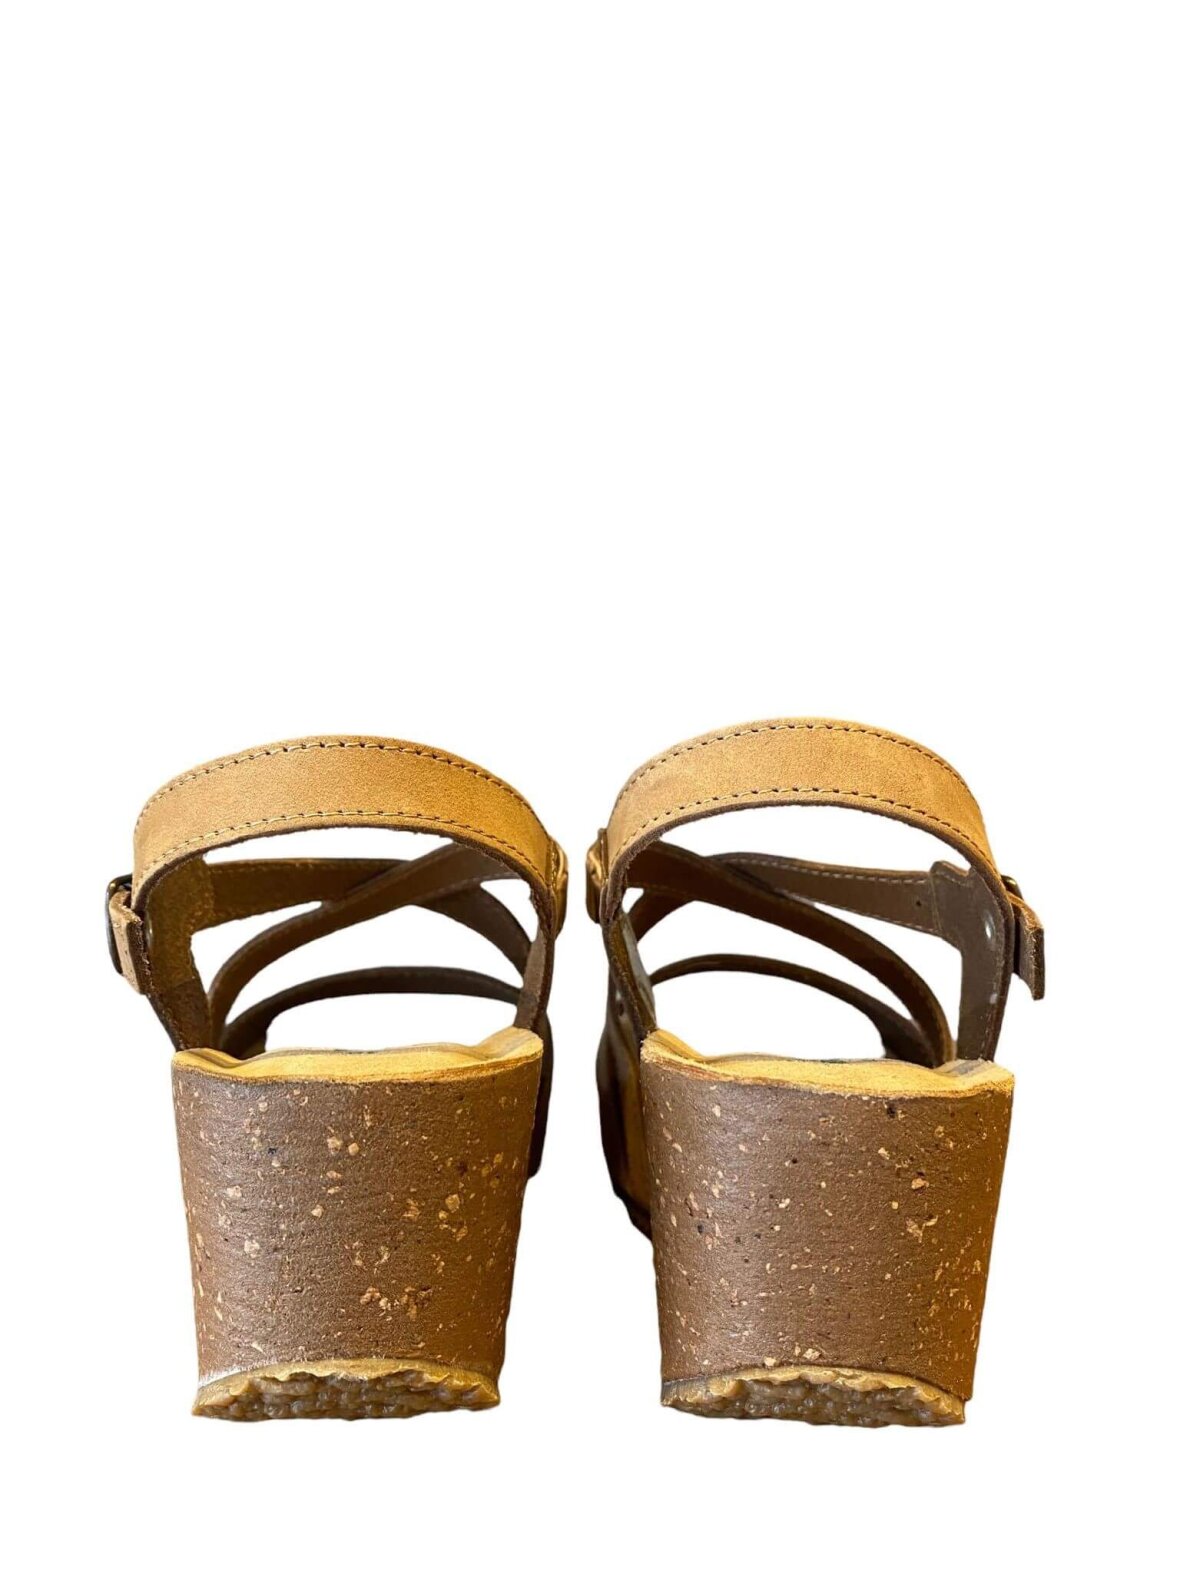 Shop sandaler BioNatura totora/mørk sand farvet nubuck hos Helle M i